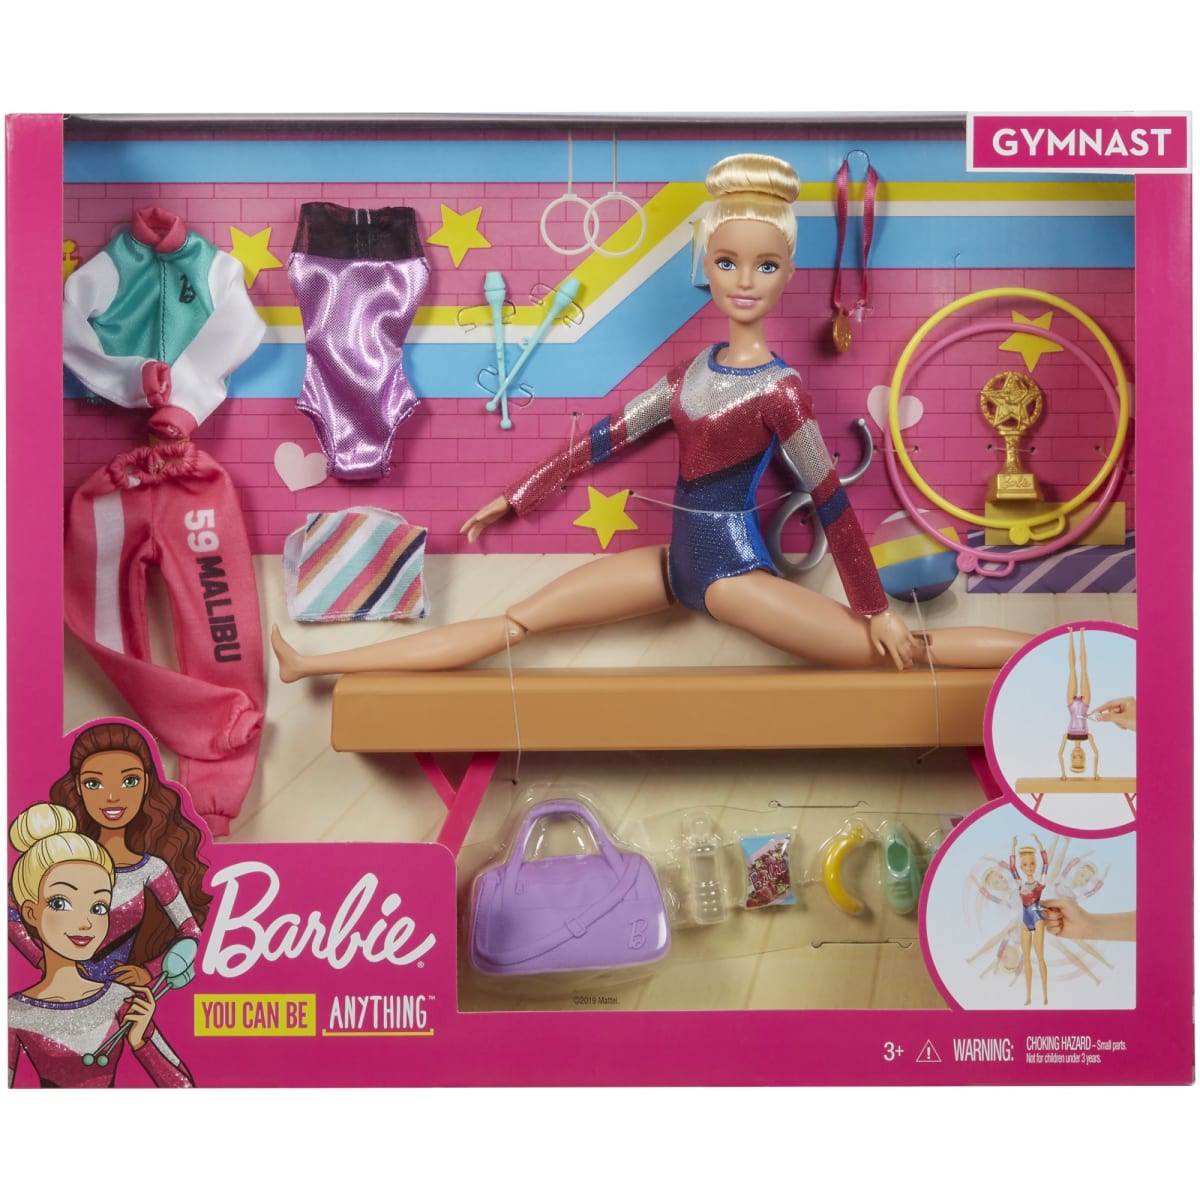 Barbie Gymnastics Playset nukke  verkkokauppa